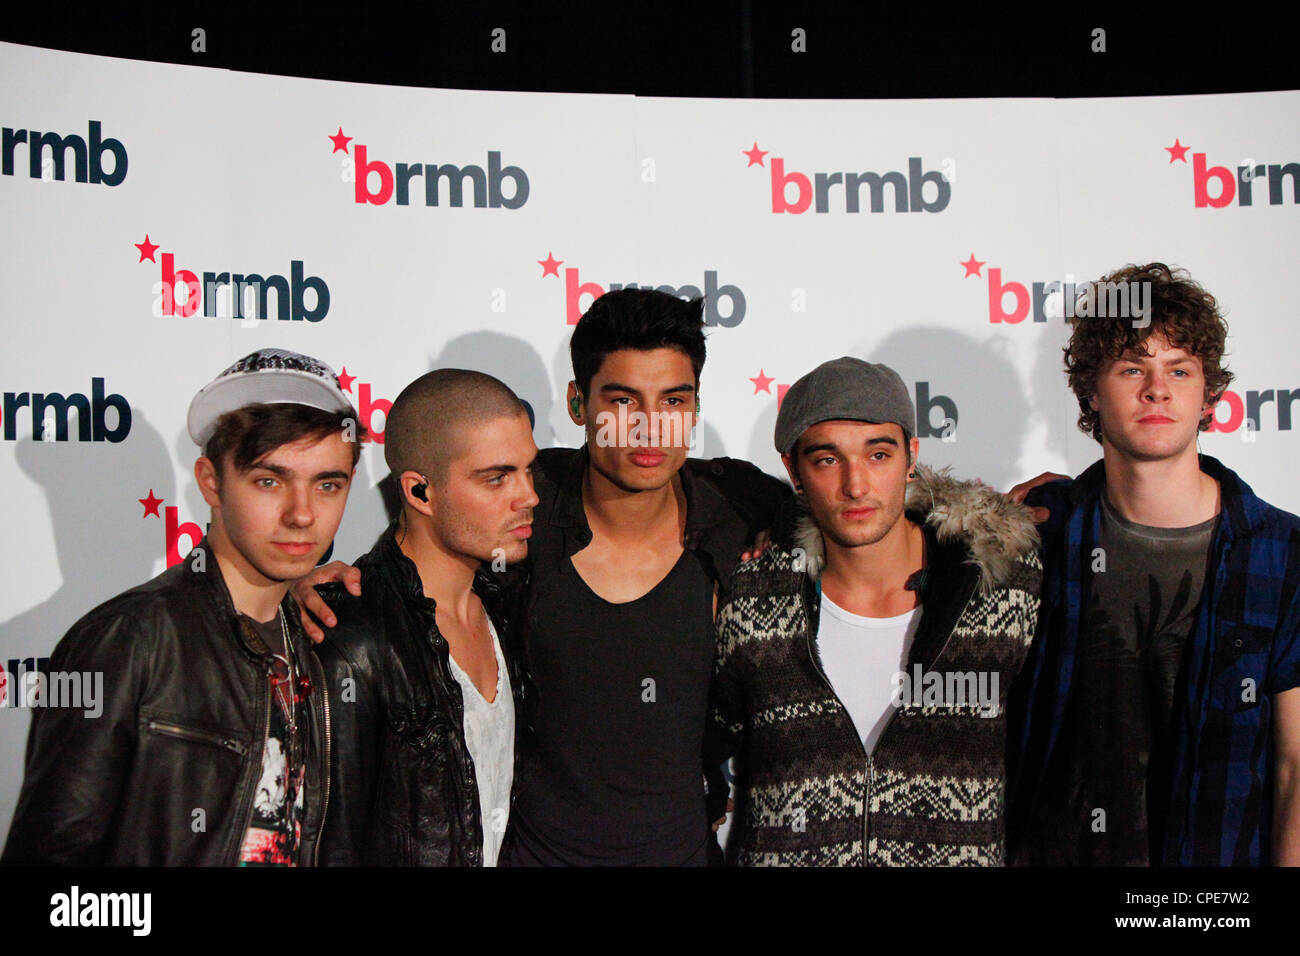 Alle fünf Mitglieder der Boyband The Wanted, hinter den Kulissen für einen Fototermin vor dem Auftritt in der LG Arena für BRMB Live 2010. Stockfoto